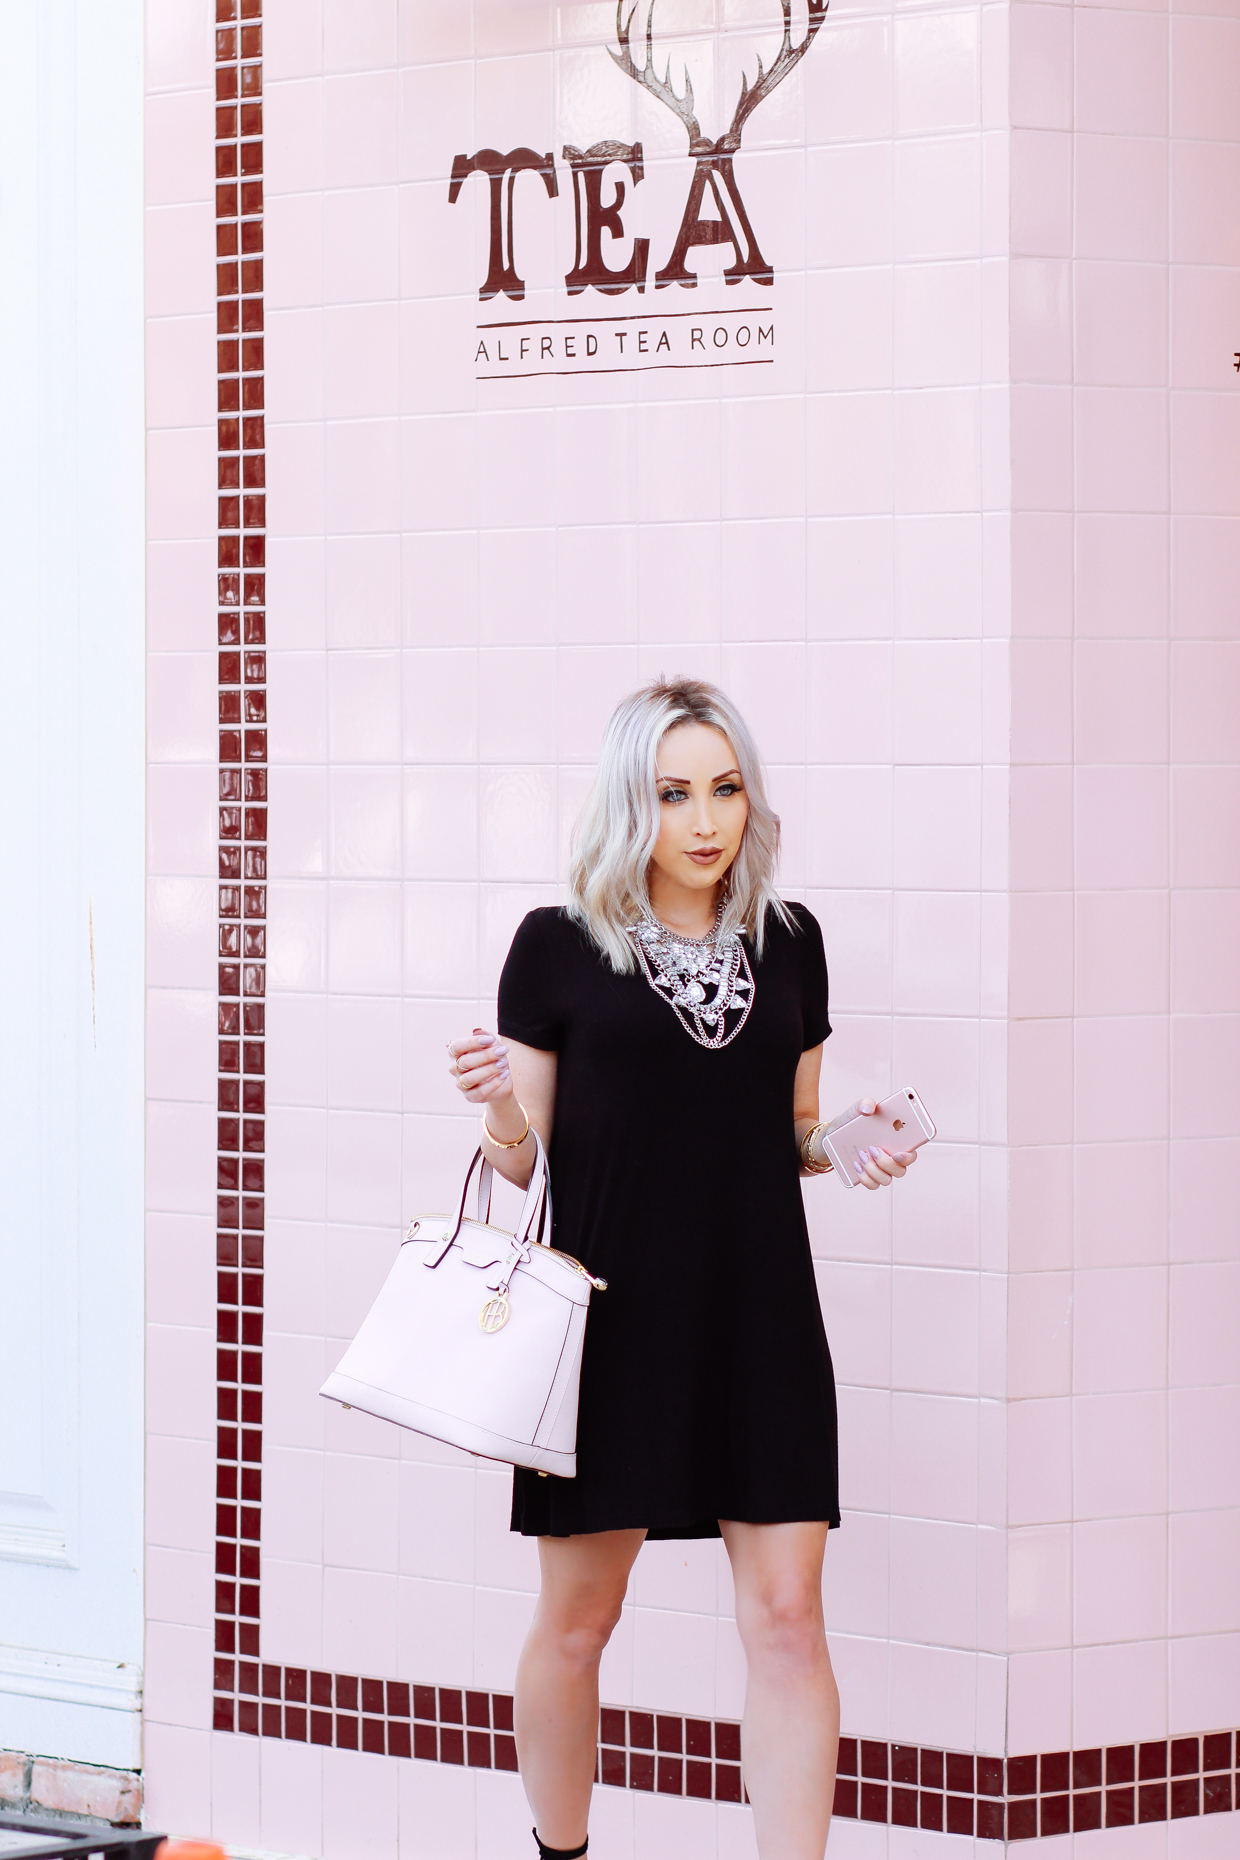 Blondie in the City | Little Black Dress, Pink @henribendel Bag, Statement Necklace | Alfred Tea Room, West Hollywood, Melrose Place